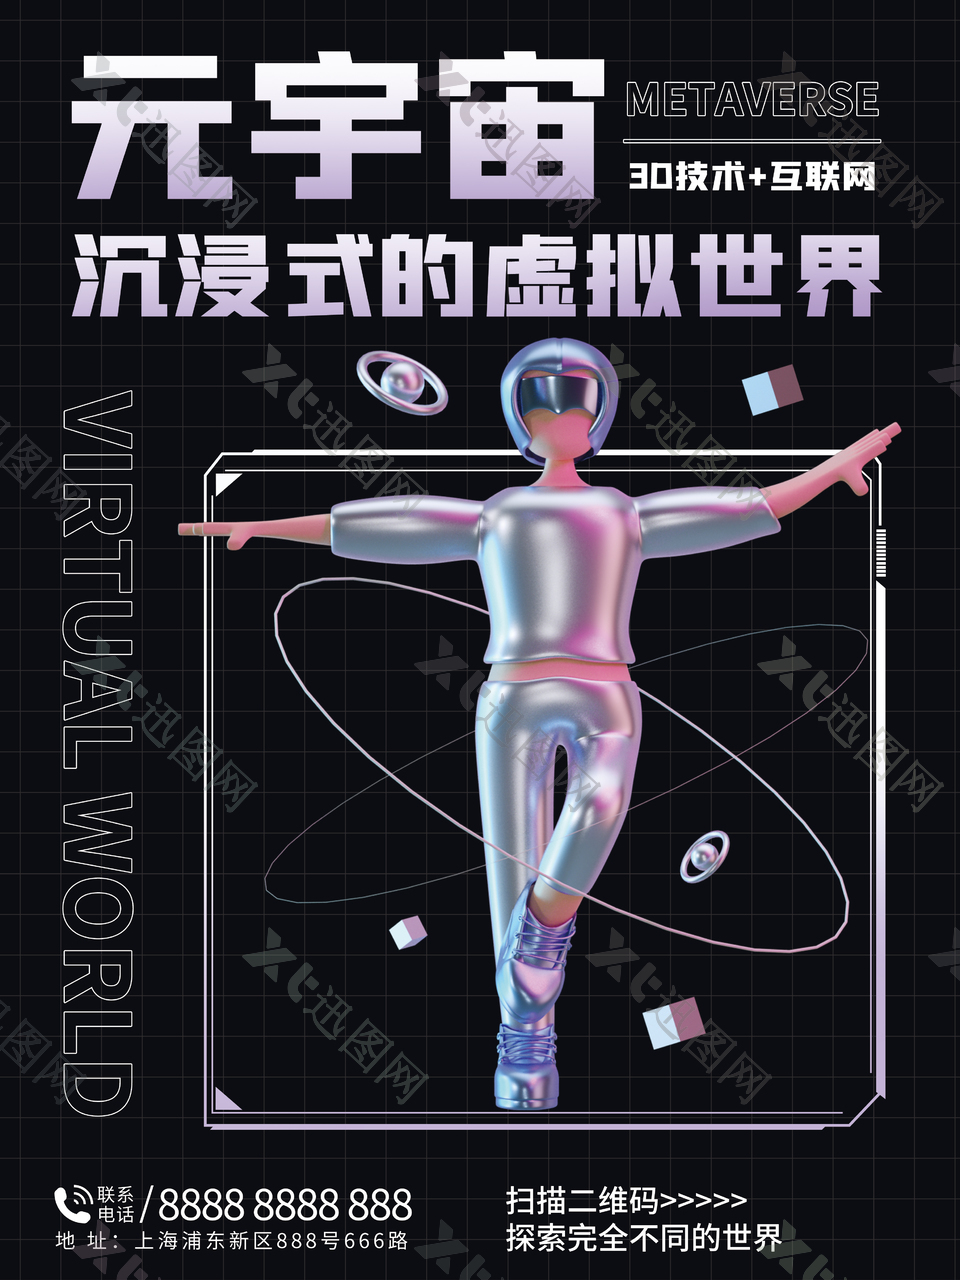 元宇宙虚拟科技公司发布会宣传海报